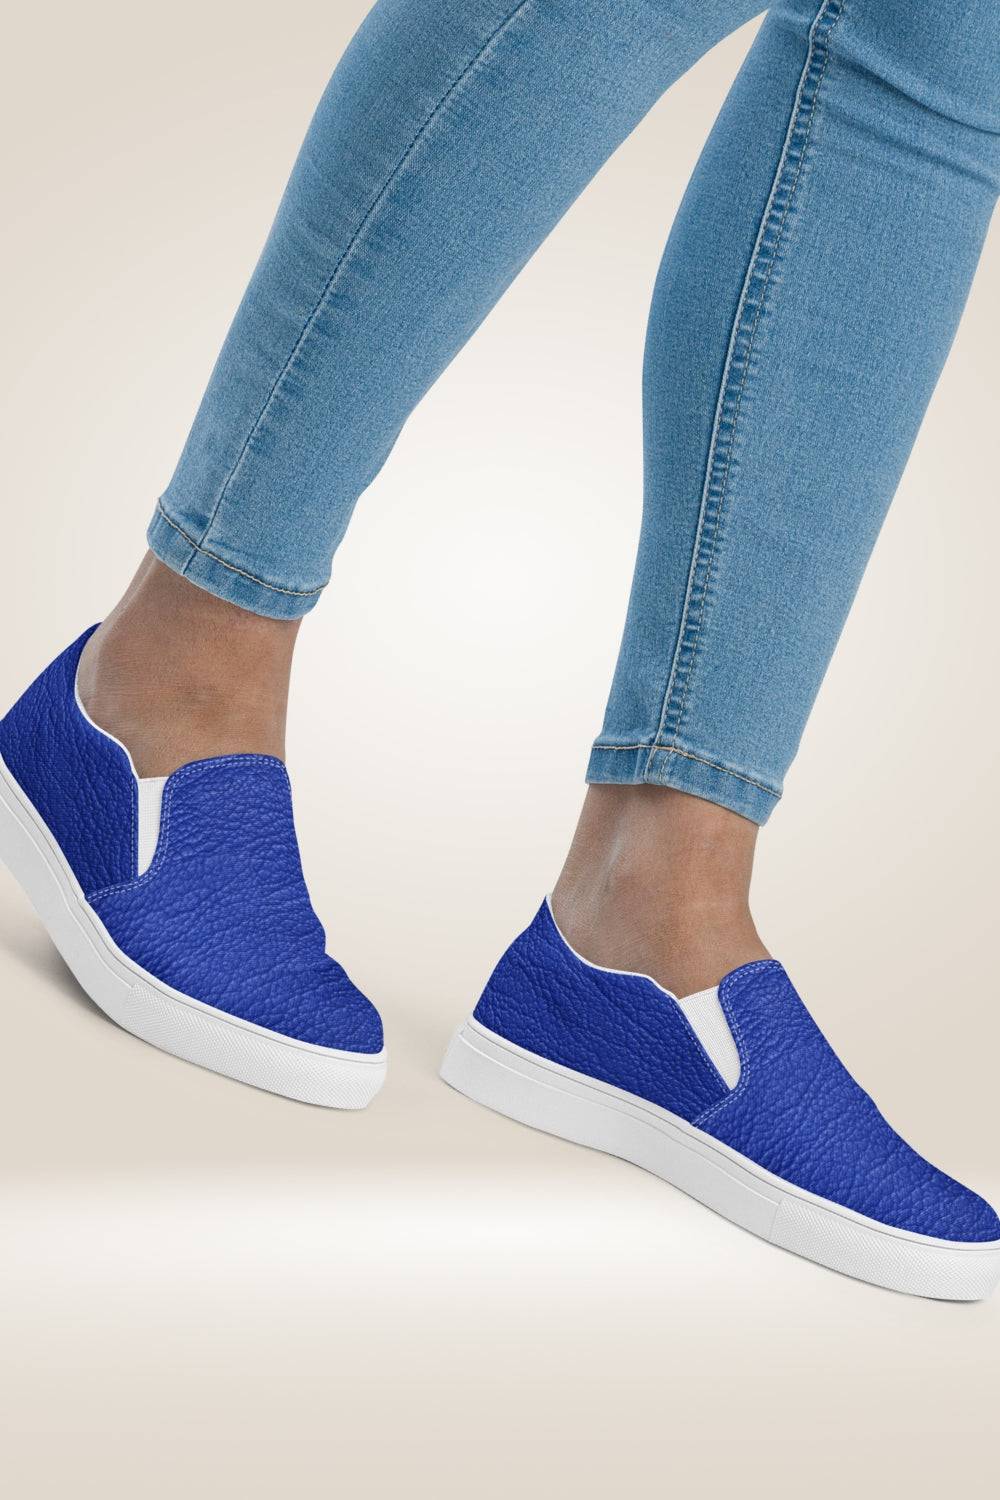 Leather Print Slip On Blue Canvas Shoes - TGC Boutique - Canvas Shoes